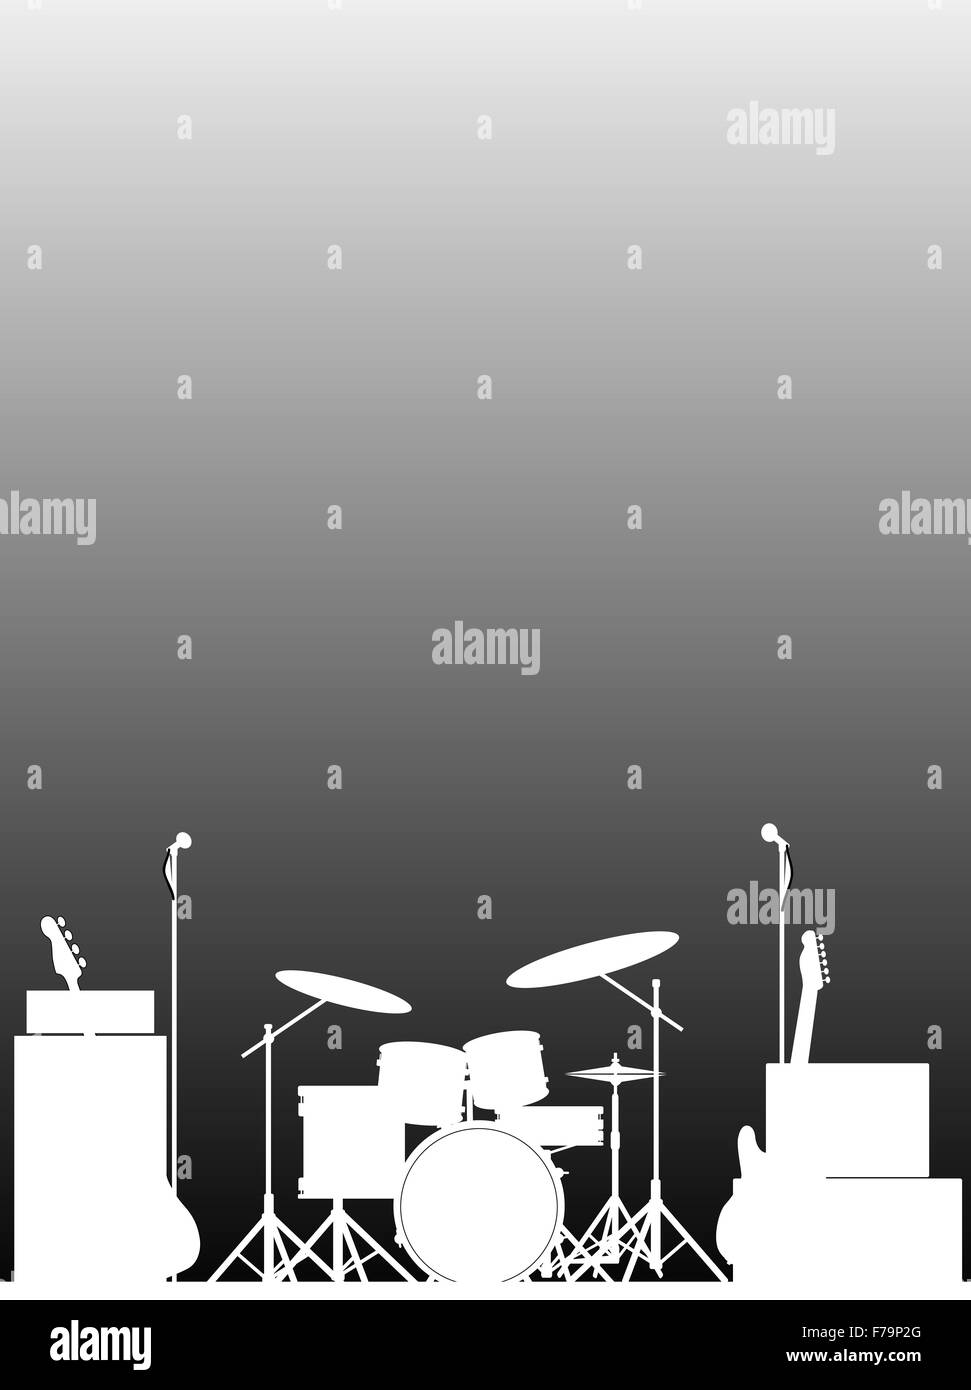 Silhouette blanche d'un équipement de rock sur scène comme une affiche Banque D'Images